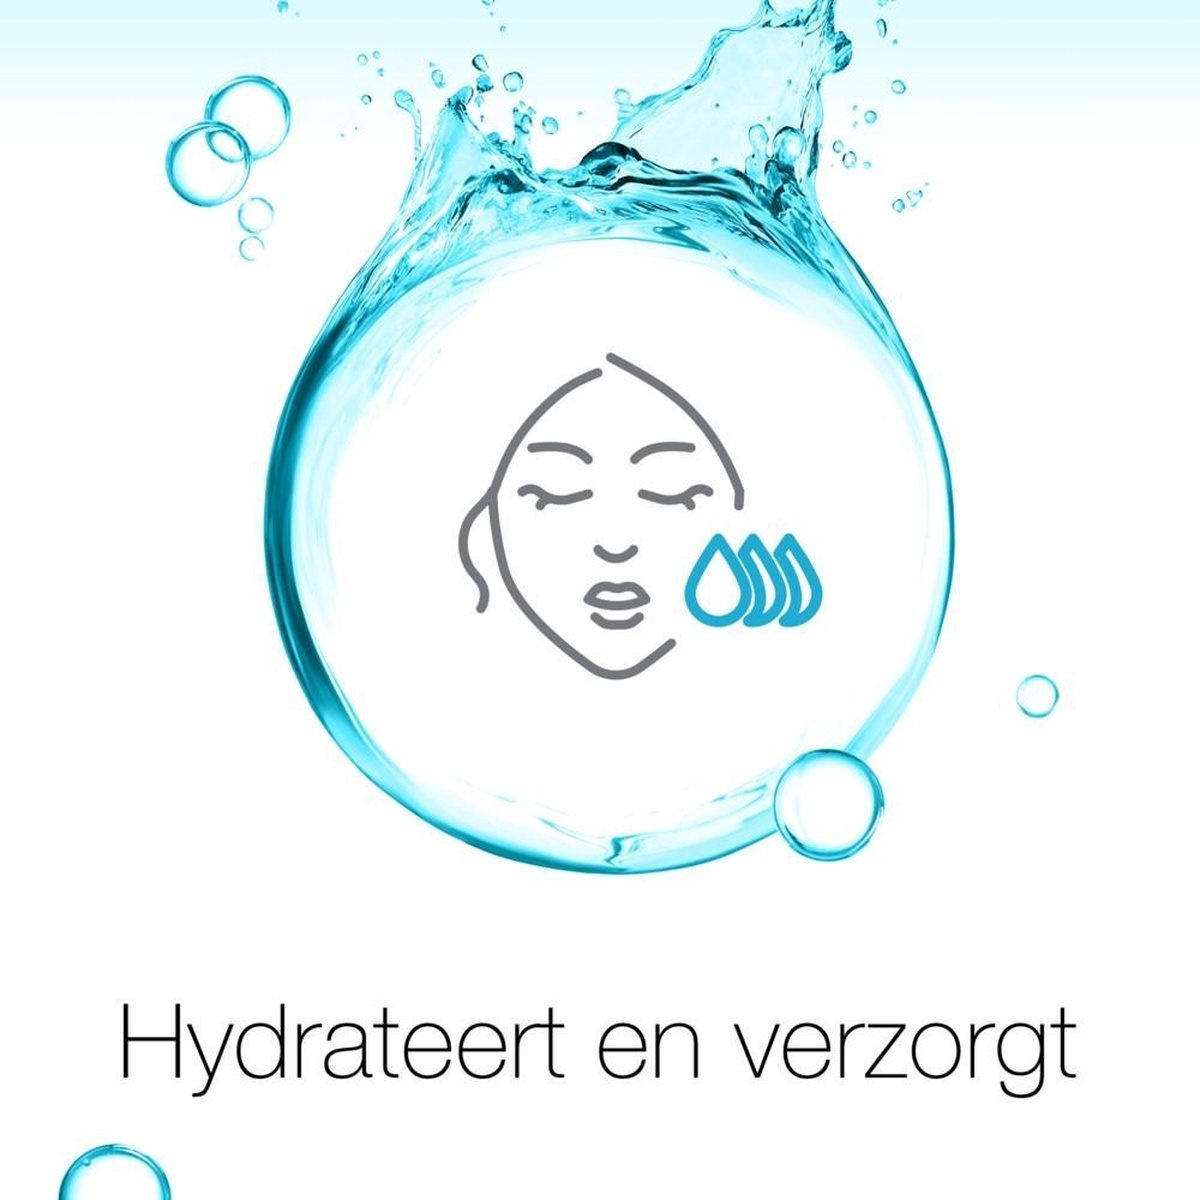 Neutrogena Hydro Boost Aqua Gel Peau Normale & Mixte 50ml